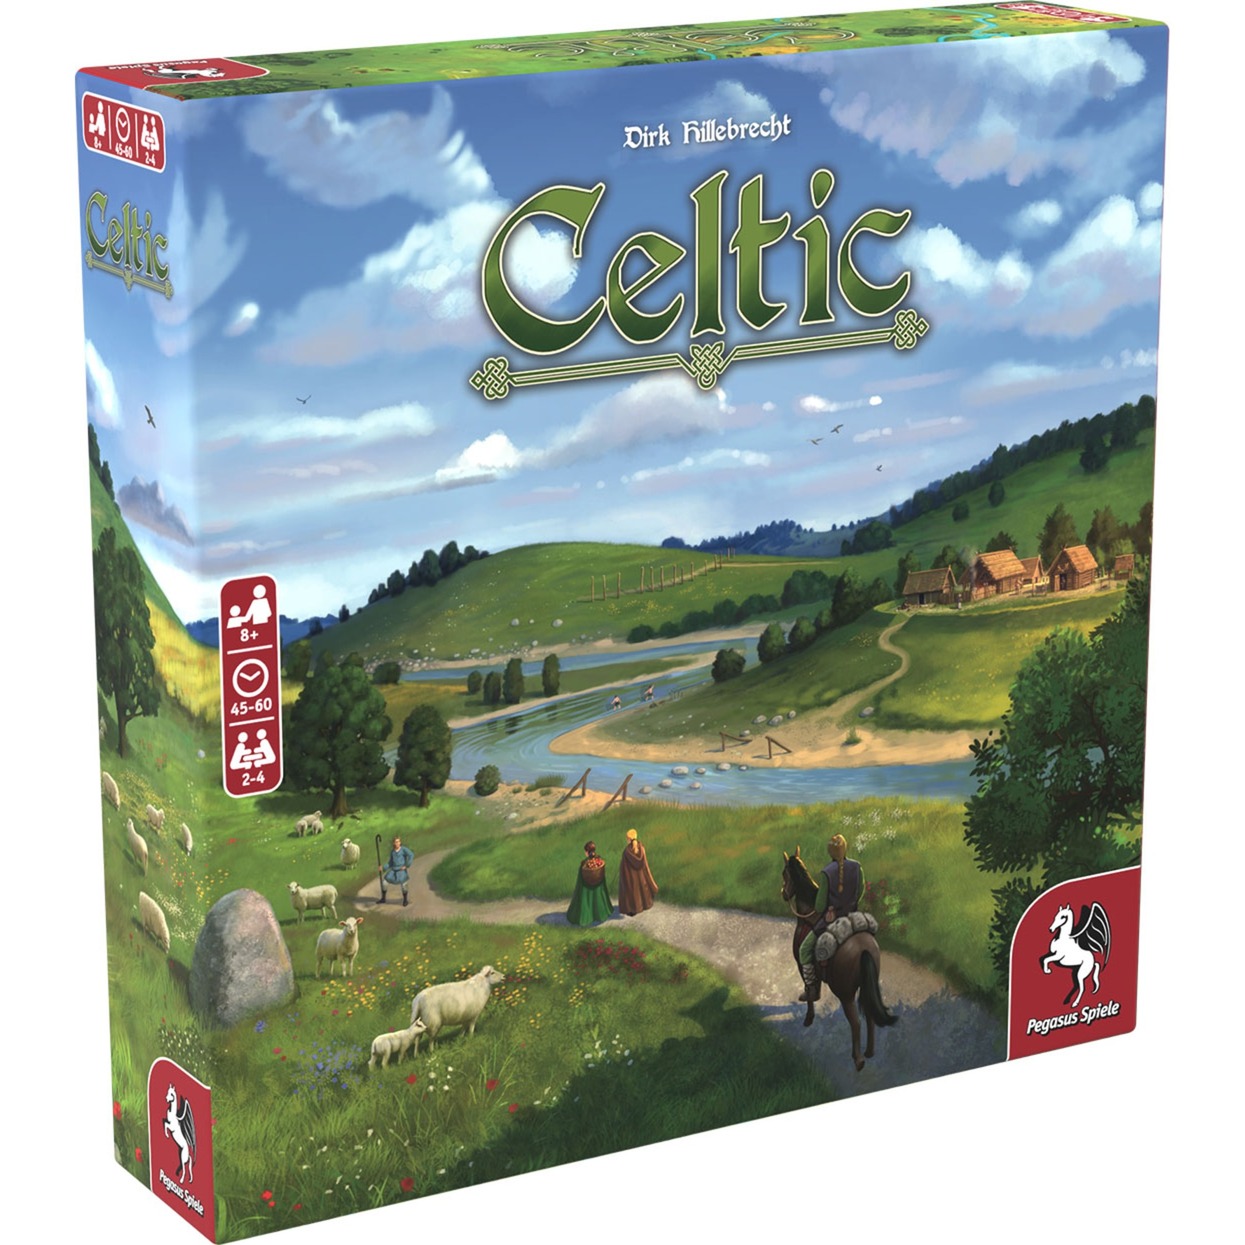 Image of Alternate - Celtic, Brettspiel online einkaufen bei Alternate